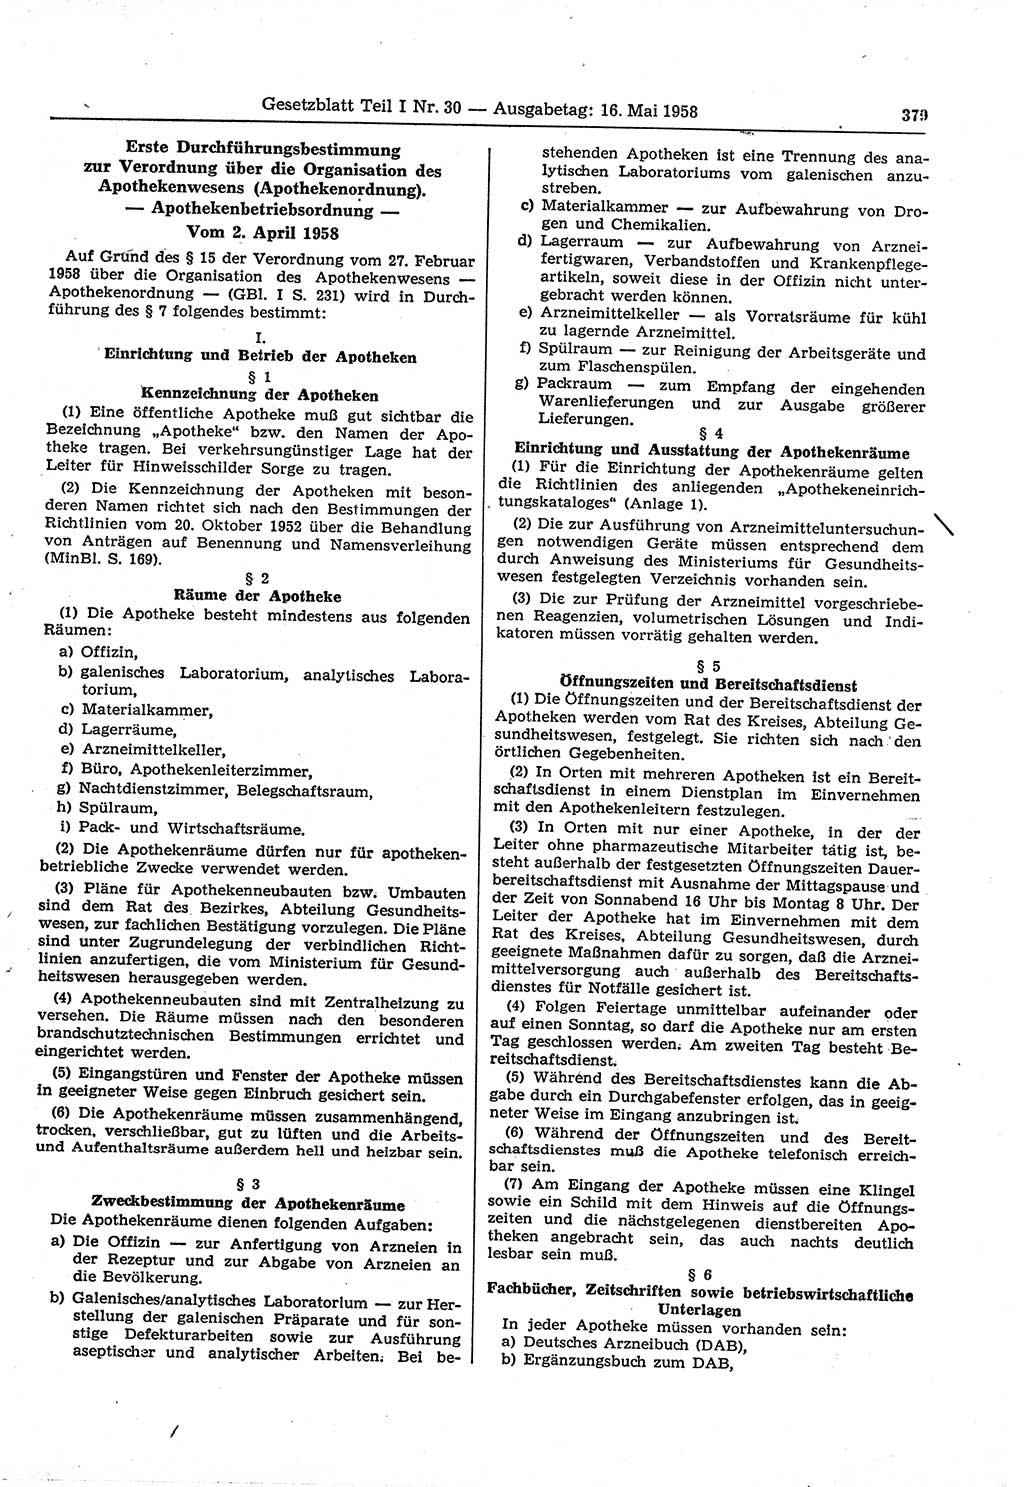 Gesetzblatt (GBl.) der Deutschen Demokratischen Republik (DDR) Teil Ⅰ 1958, Seite 379 (GBl. DDR Ⅰ 1958, S. 379)